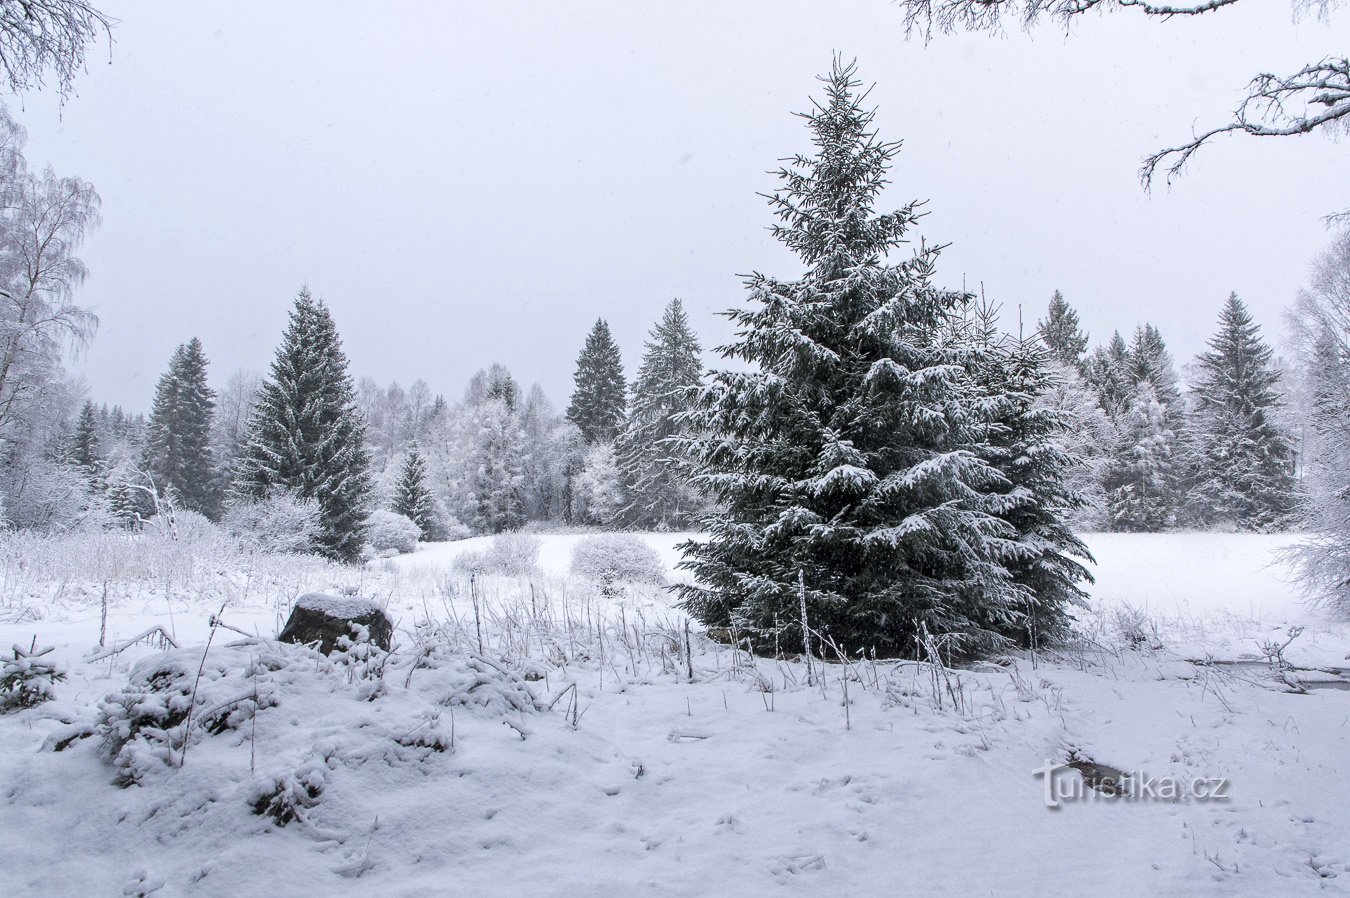 Settimana invernale nella Selva Boema – Febbraio 2020 pt. 2